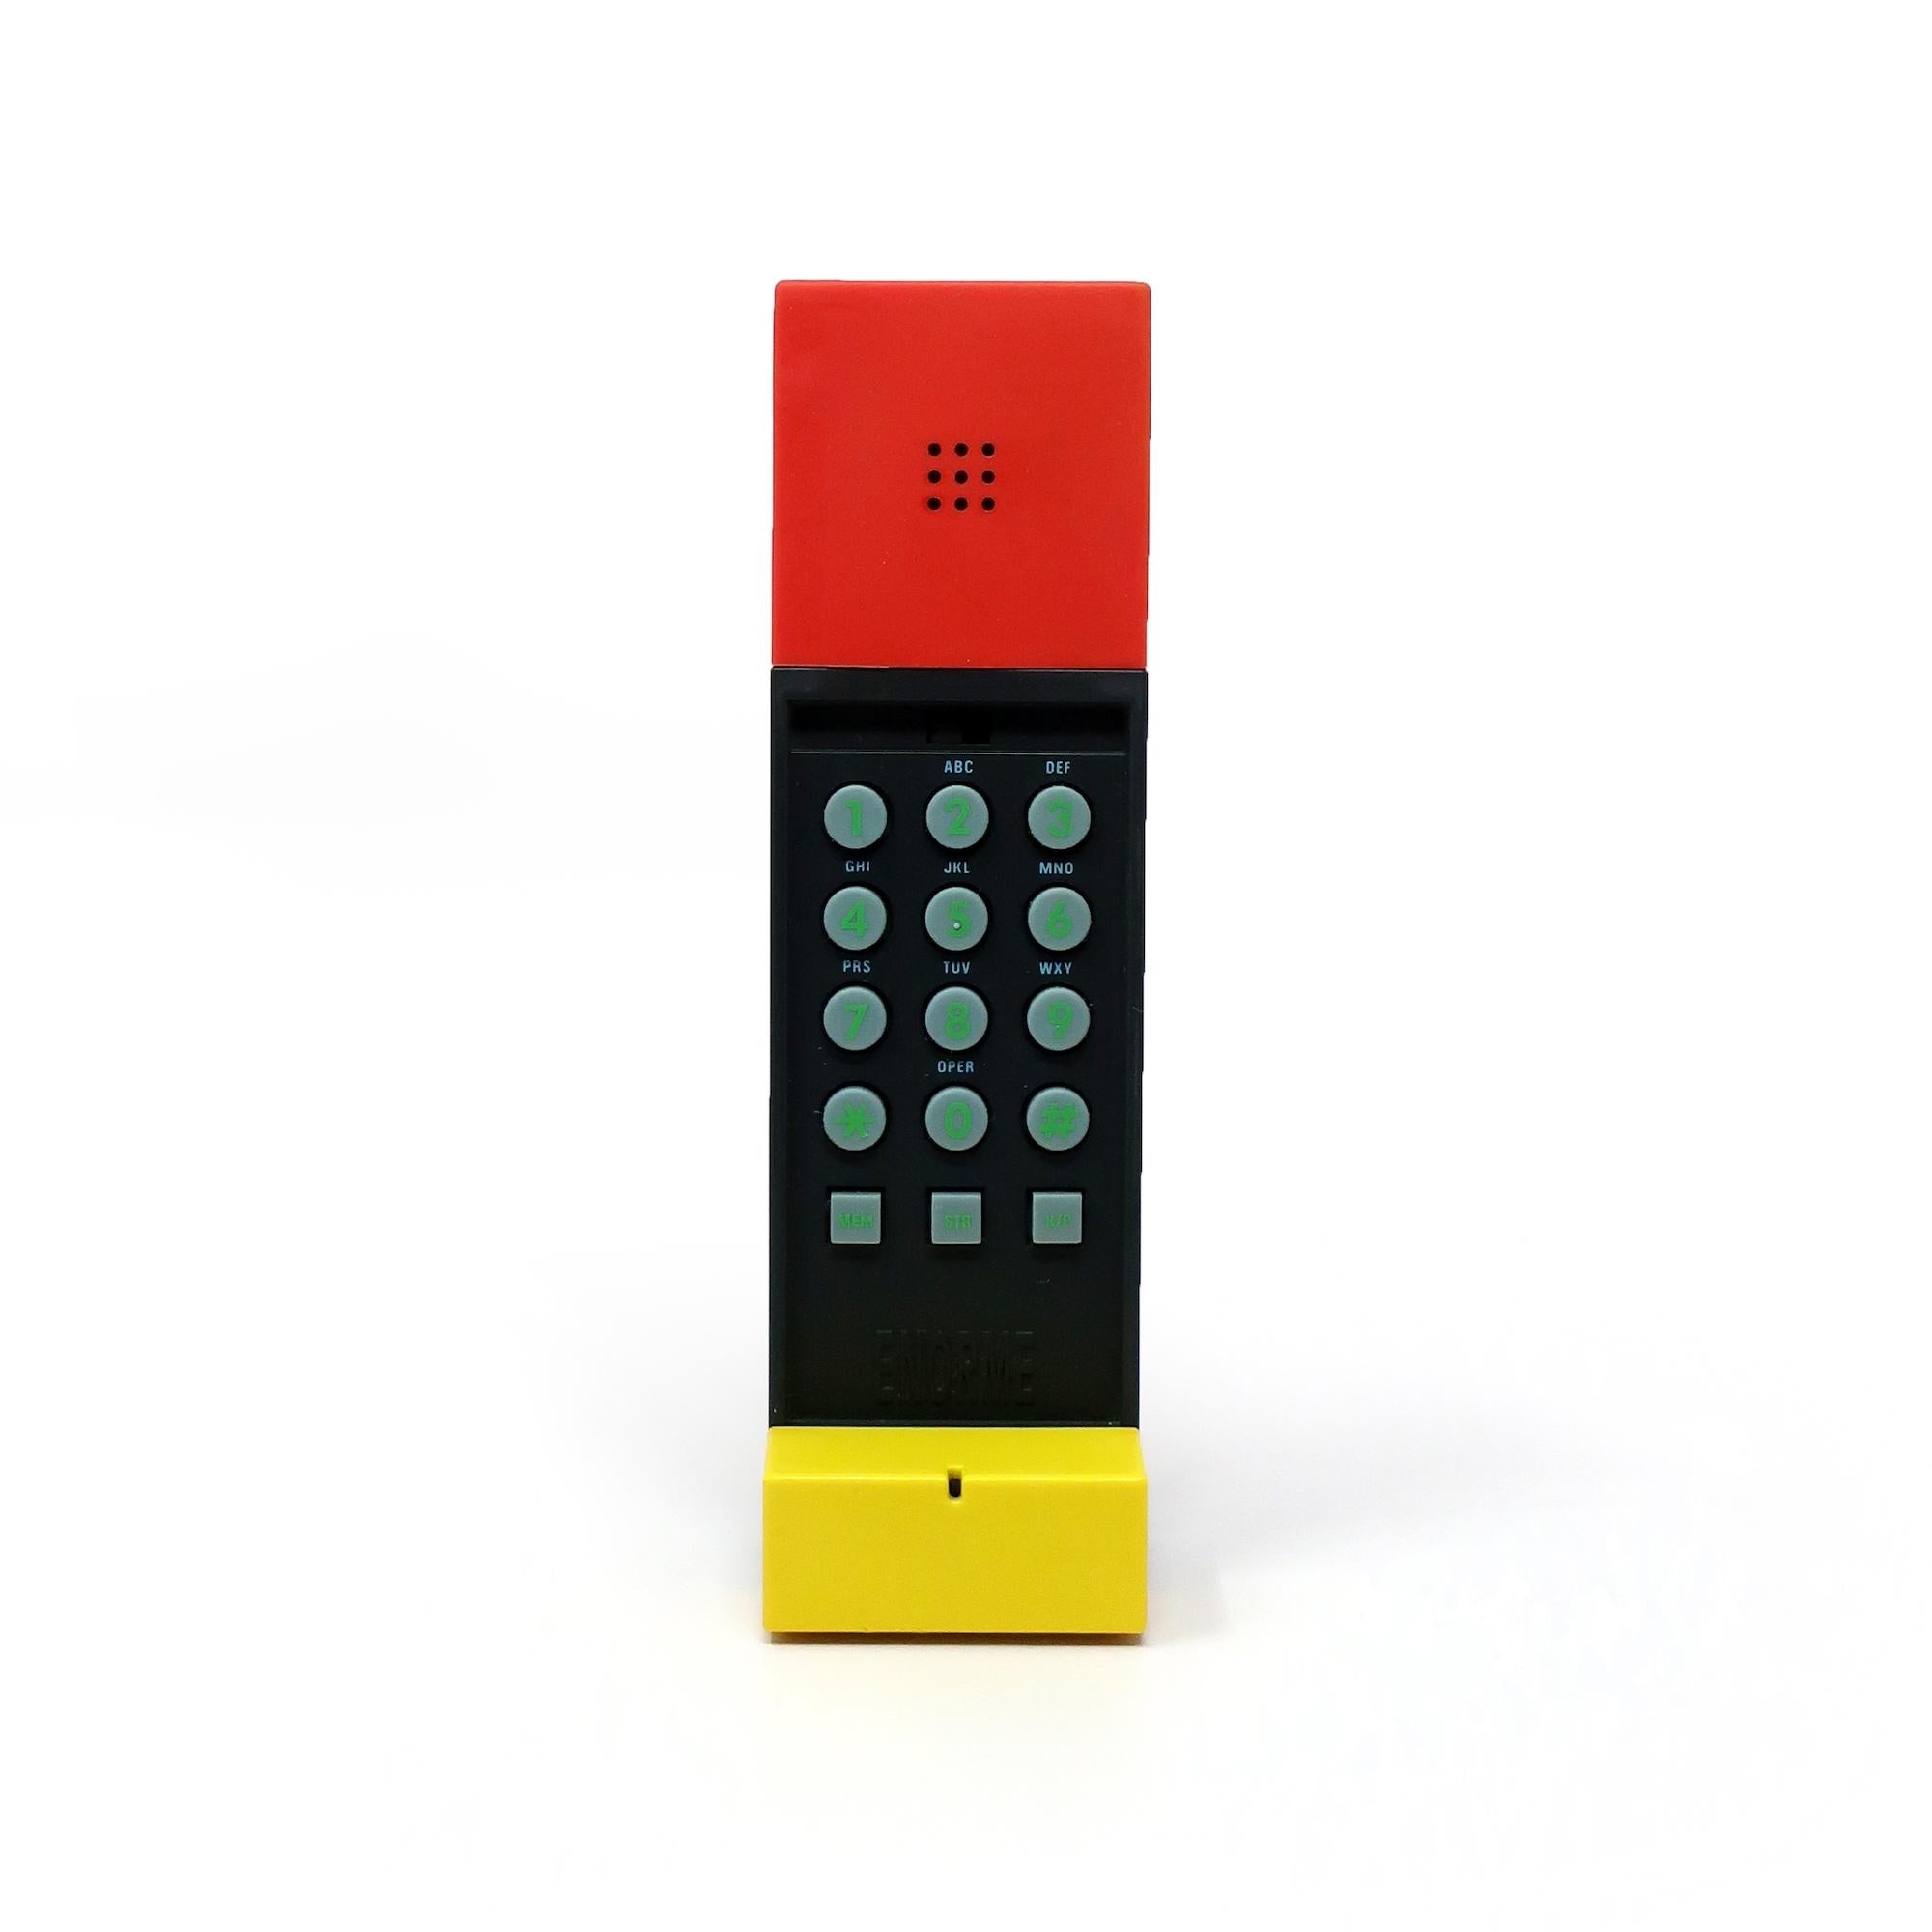 Ein perfekt postmoderner Telefonhörer, entworfen von Ettore Sottsass, dem Meister von Memphis Milano, aus dem Jahr 1986.  Das Enorme-Telefon ist das Ergebnis einer Collaboration zwischen Sottsass und David Kelley, dem Gründer der Designfirma IDEO.